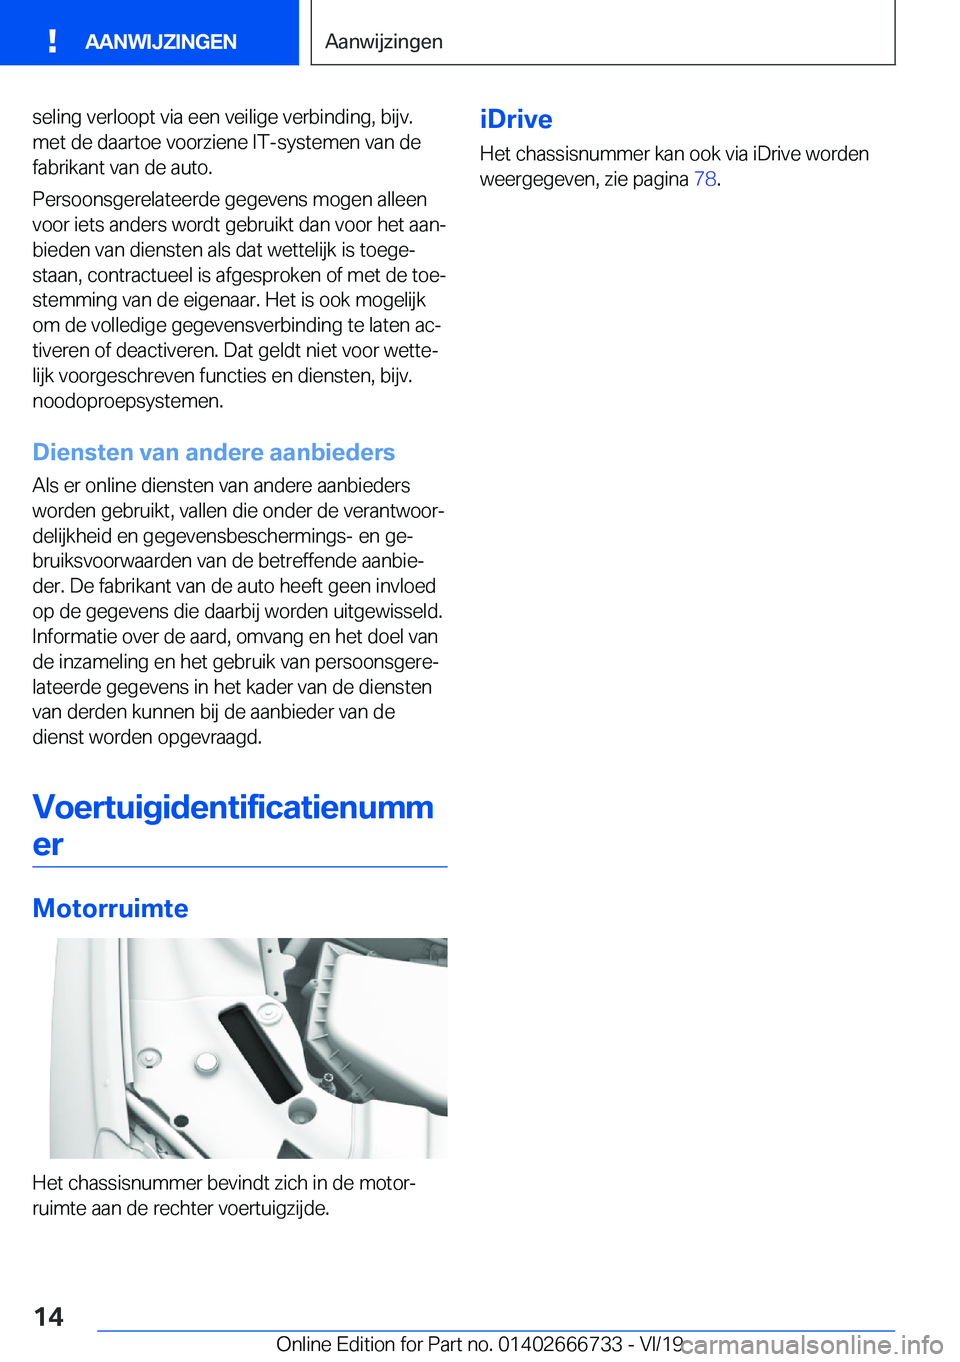 BMW M5 2020  Instructieboekjes (in Dutch) �s�e�l�i�n�g��v�e�r�l�o�o�p�t��v�i�a��e�e�n��v�e�i�l�i�g�e��v�e�r�b�i�n�d�i�n�g�,��b�i�j�v�.
�m�e�t��d�e��d�a�a�r�t�o�e��v�o�o�r�z�i�e�n�e��I�T�-�s�y�s�t�e�m�e�n��v�a�n��d�e �f�a�b�r�i�k�a